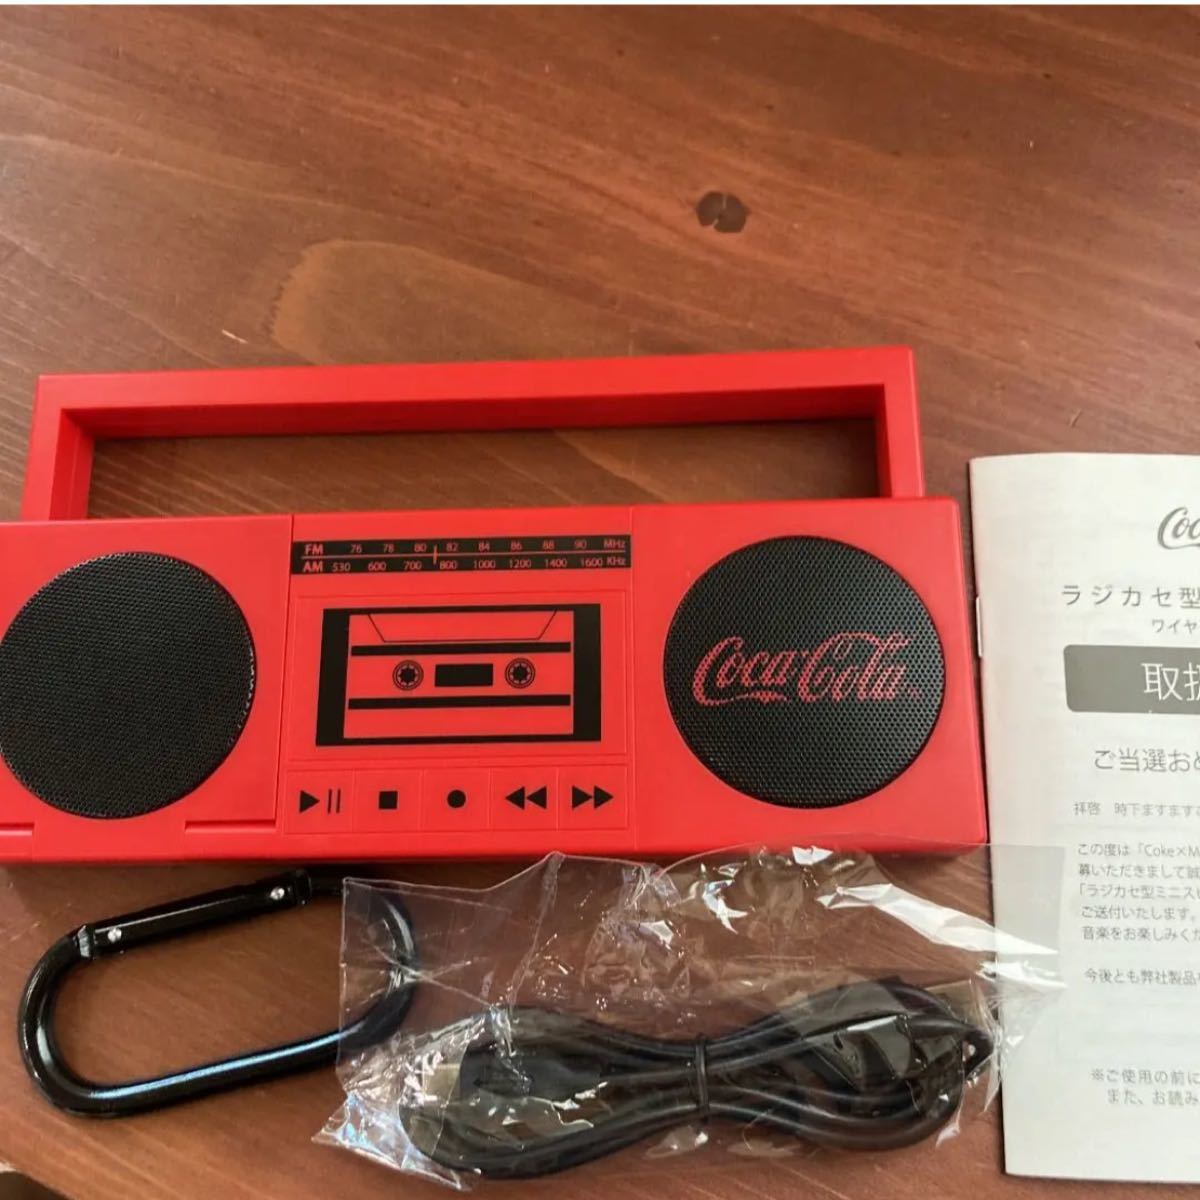 555円 もらって嬉しい出産祝い コカコーラ ラジカセ型ミニスピーカー ワイヤレスイヤホン付